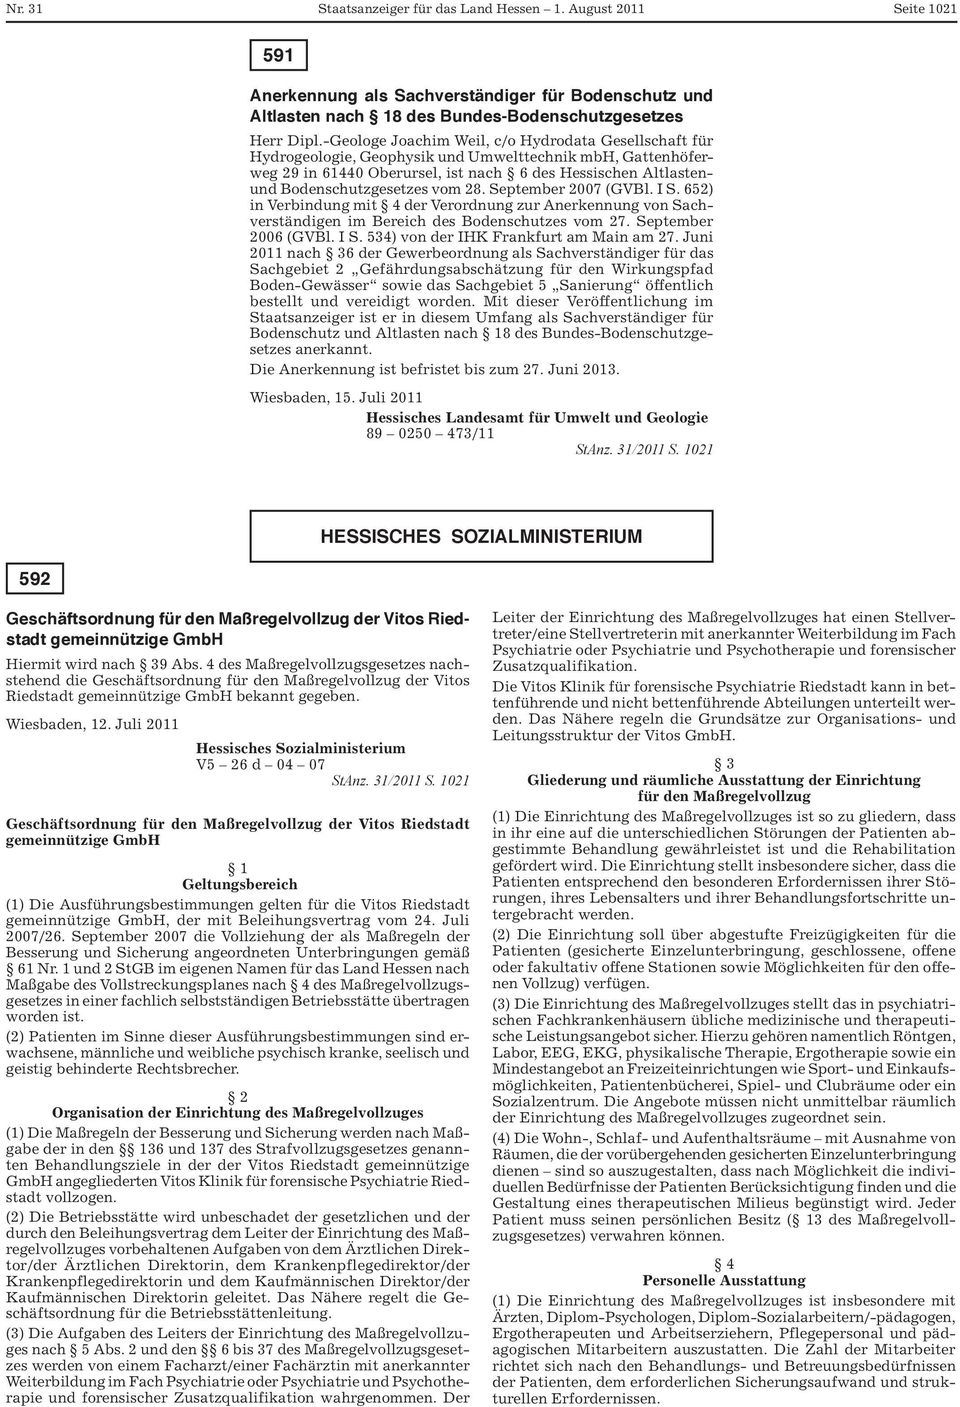 vom 28. September 2007 (GVBl. I S. 652) in indung mit 4 der Verordnung zur Anerkennung von Sachverständigen im Bereich des Bodenschutzes vom 27. September 2006 (GVBl. I S. 534) von der IHK Frankfurt am Main am 27.